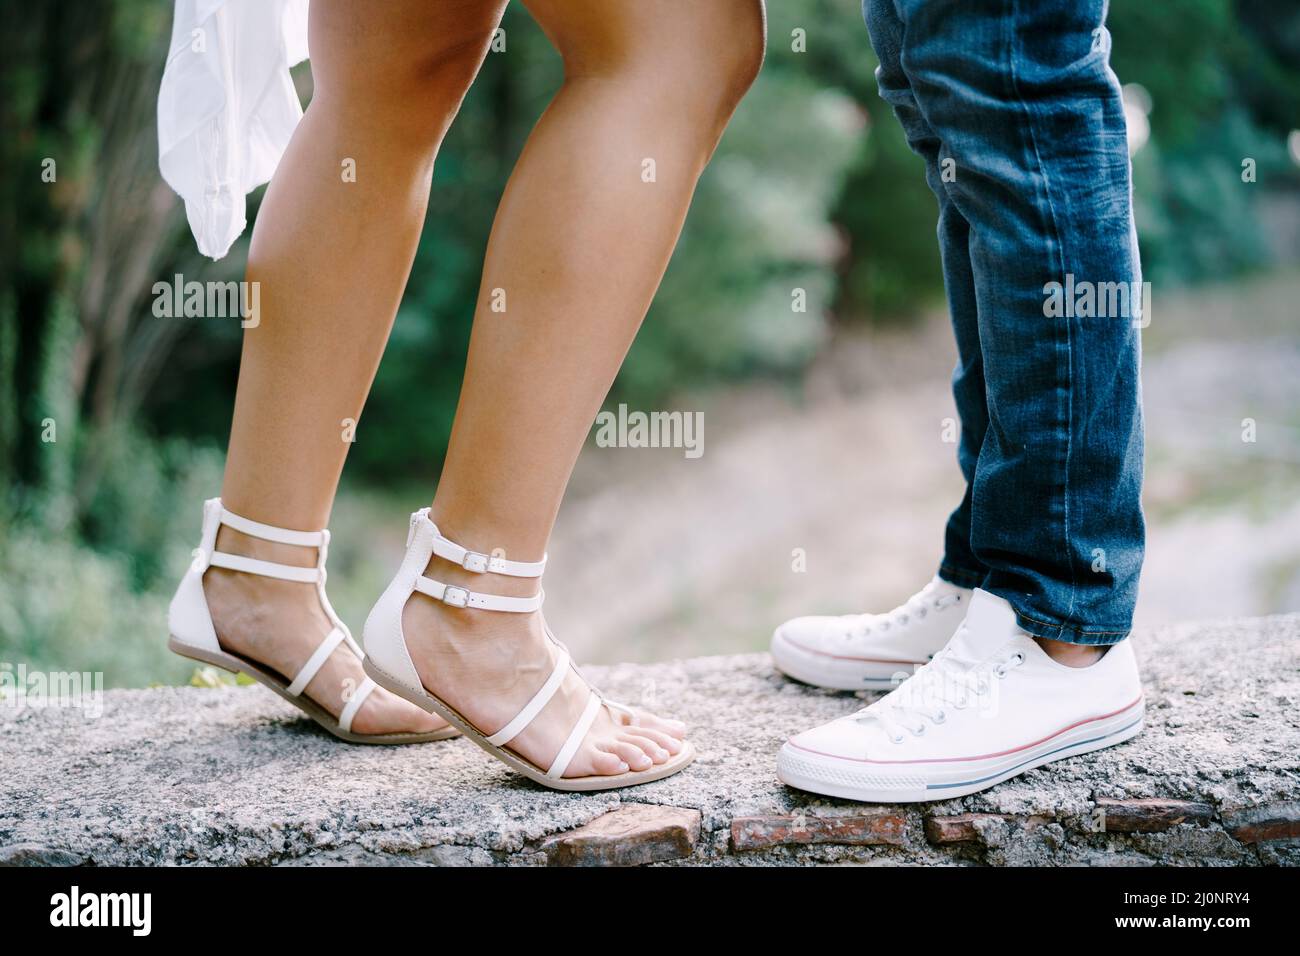 Weibliche Füße in Sandalen neben männlichen Füßen in Sneakers stehen an einer Steingrenze im Park Stockfoto